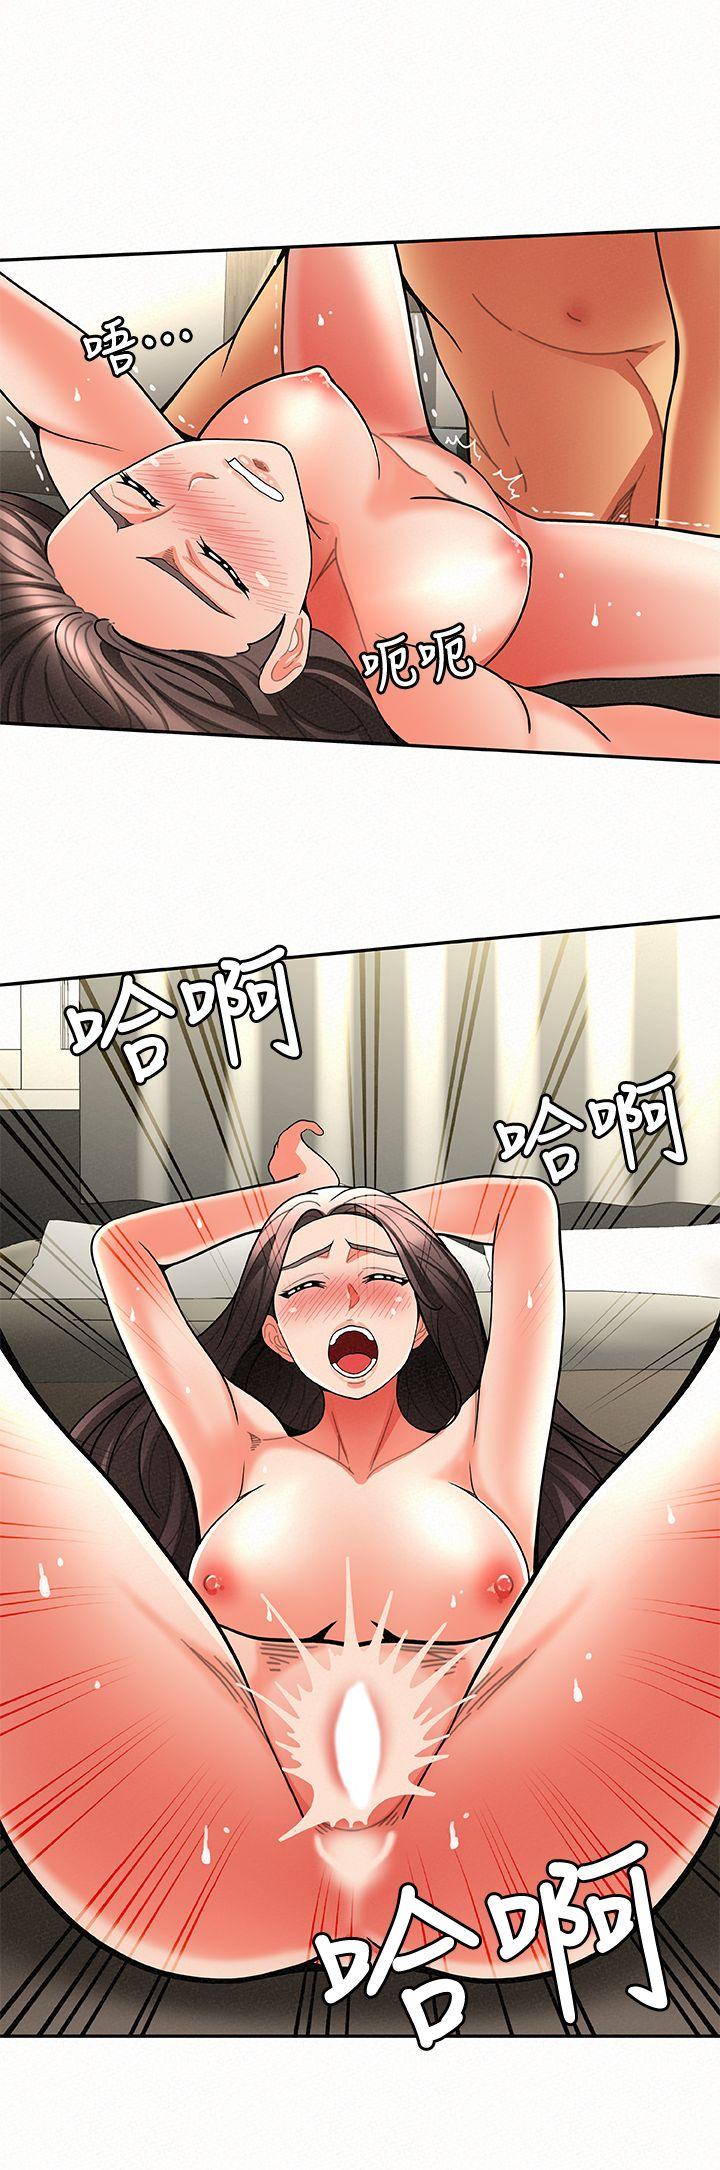 韩国污漫画 報告夫人 第6话-身体力行的家教课 29